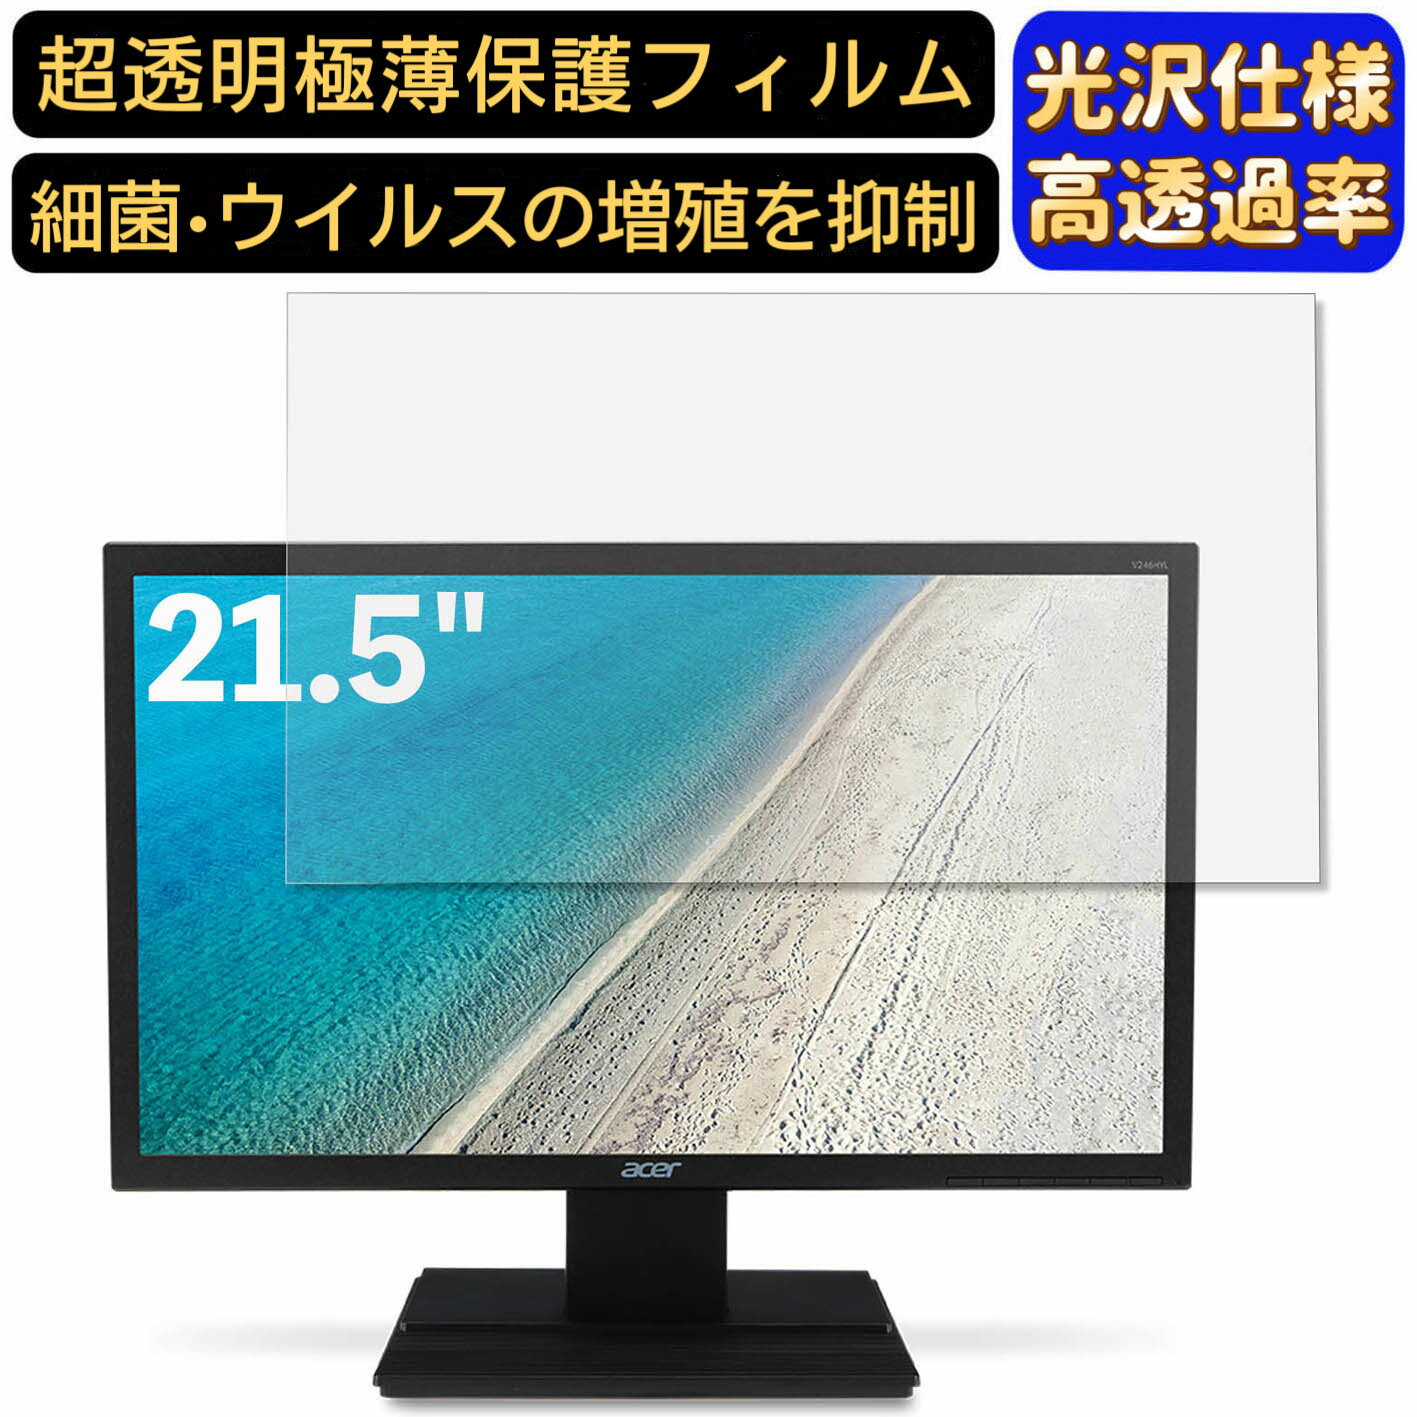 【ポイント2倍】Acer V226HQLbmdf 21.5イ